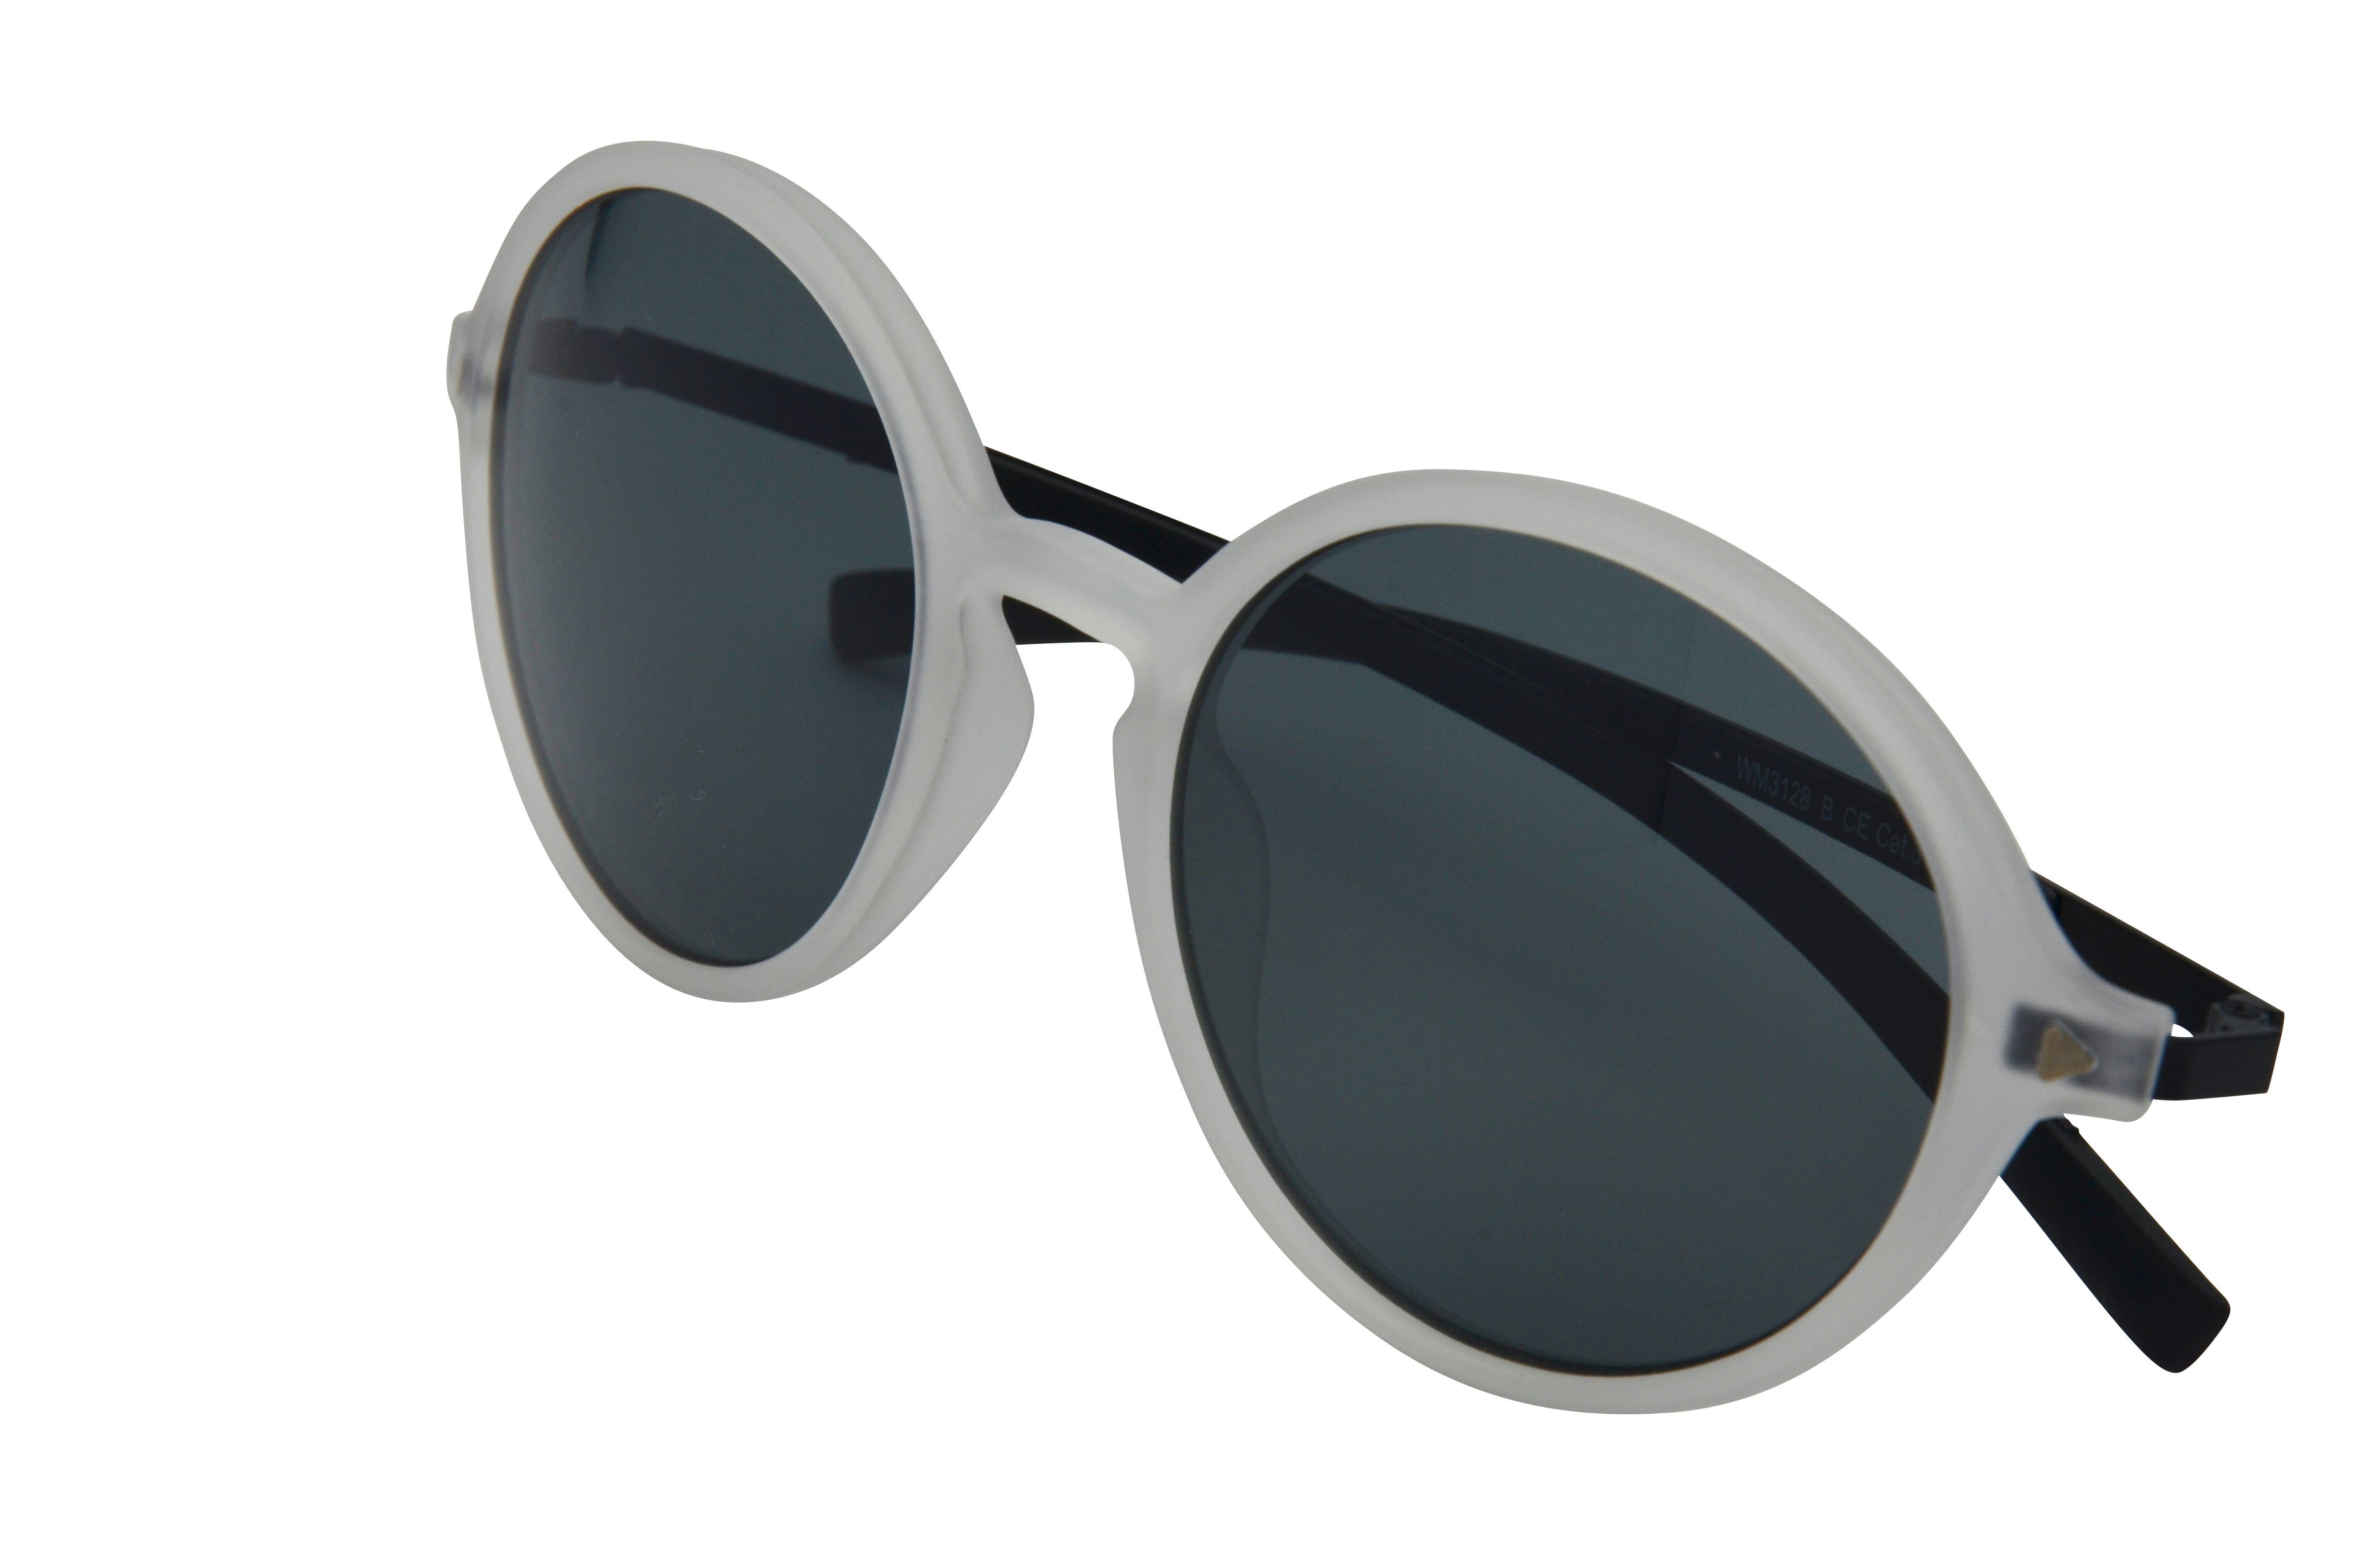 Brille Gamswild Damen, weiß, blau, Metallbügel pink, WM3128 Sonnenbrille GAMSSTYLE Mode schwarz